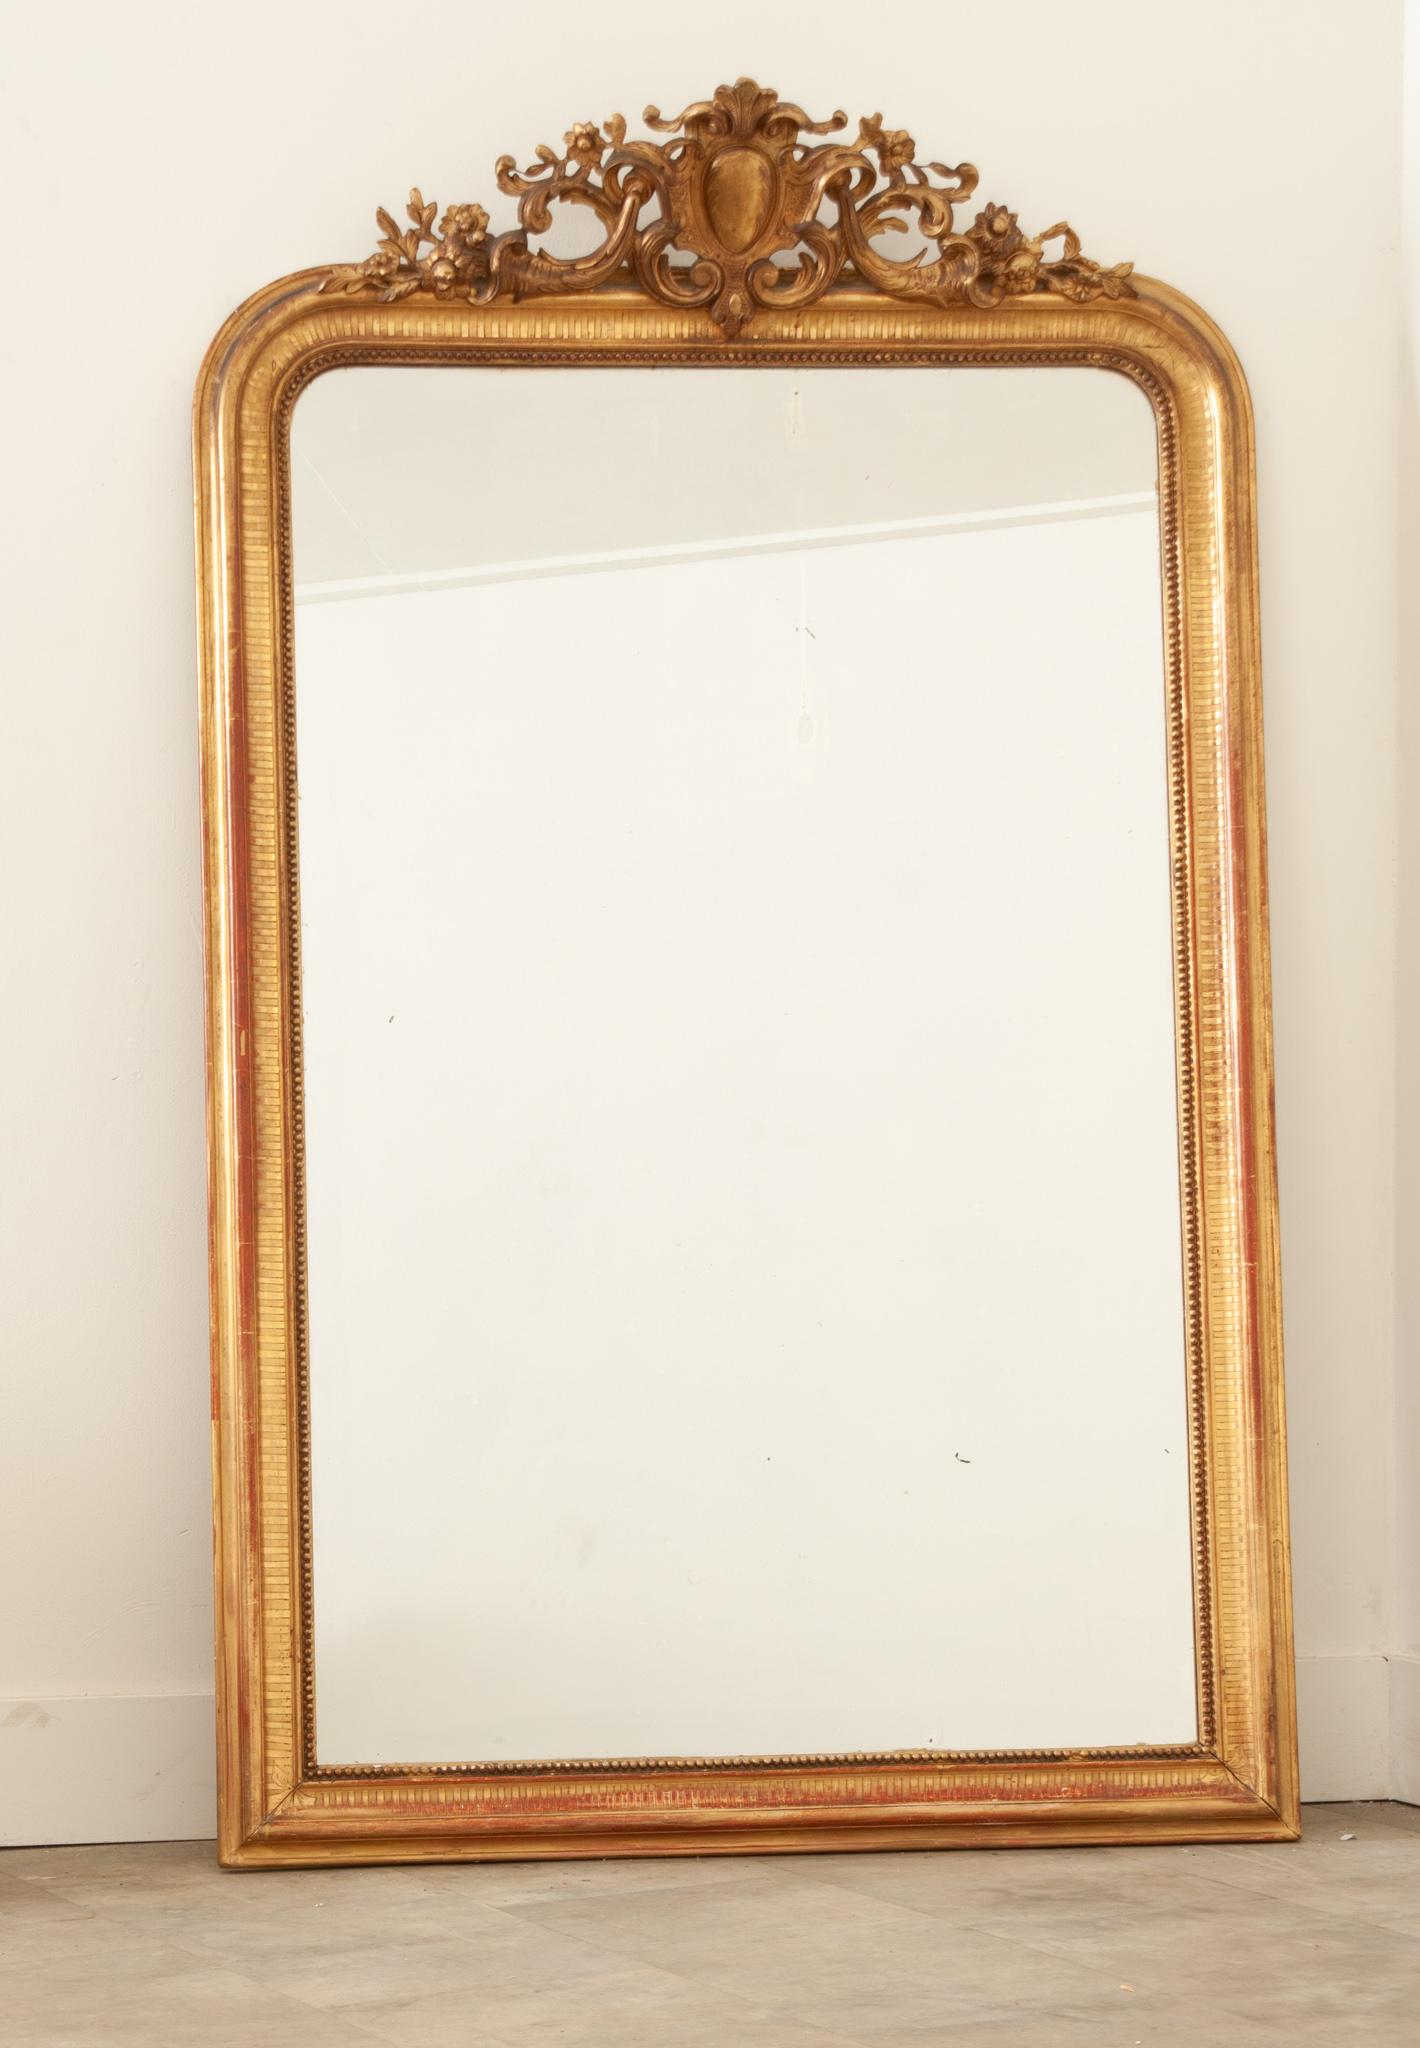 Un superbe miroir doré de style Louis XVI, fabriqué à la main en France au XIXe siècle. Cet élégant miroir est doté de la glace d'origine, encore belle et présentant des traces de rousseur et quelques marques. Le cadre sculpté à la main est surmonté